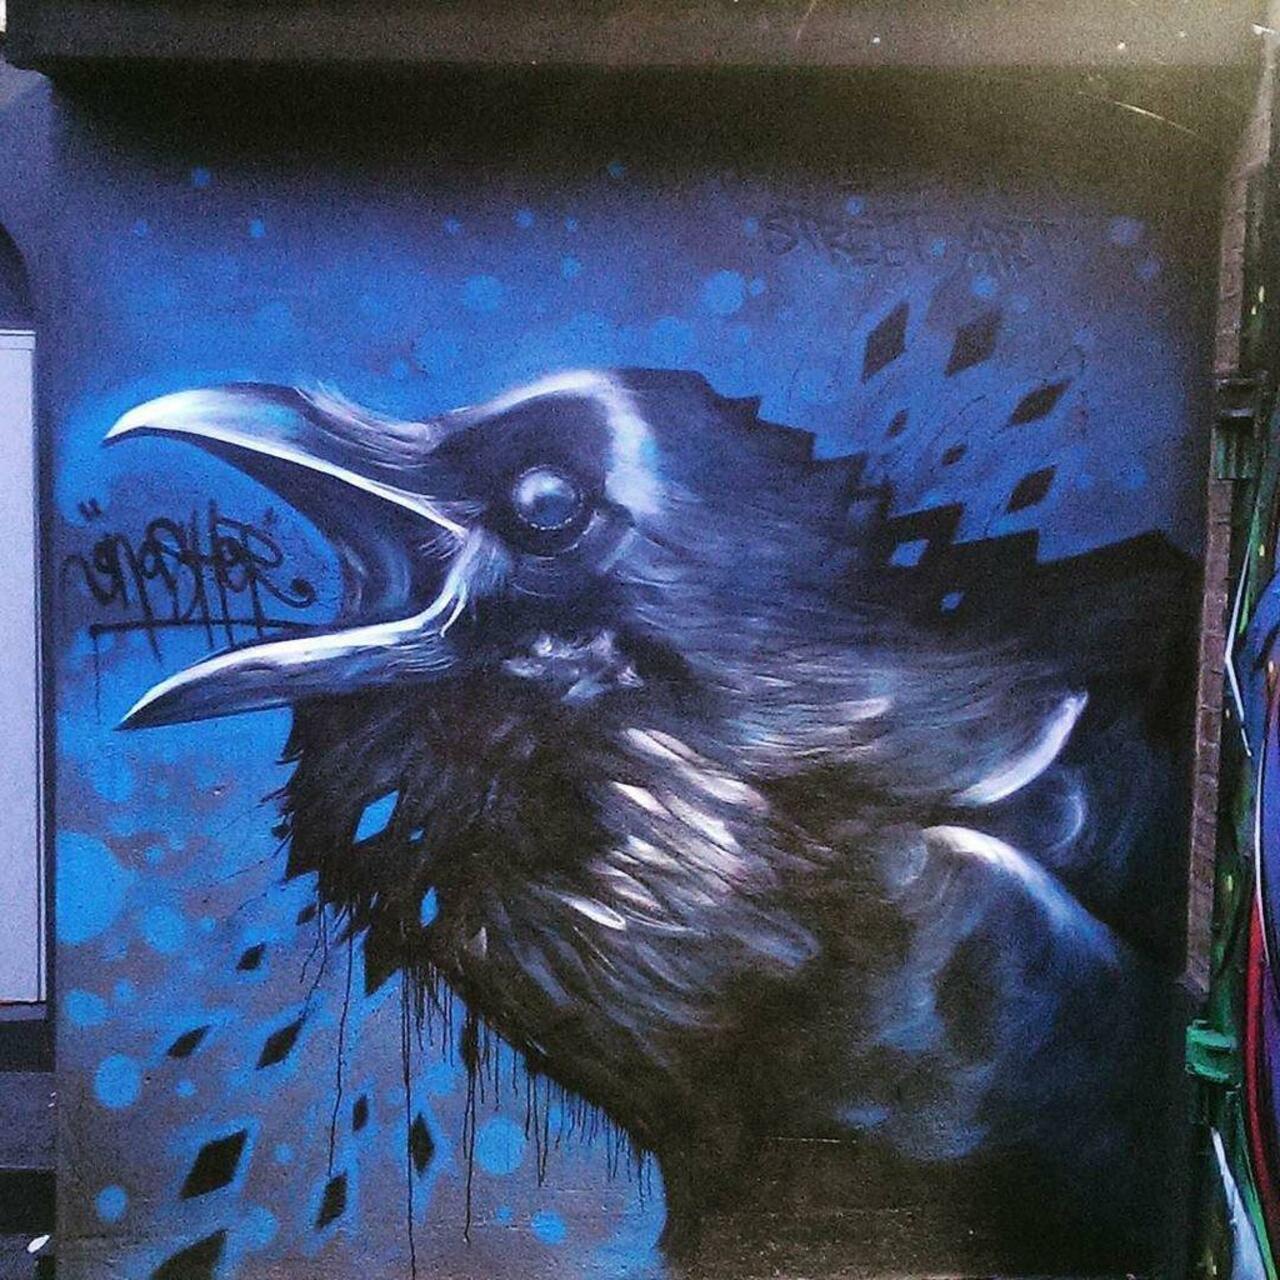 Blackbird blues #London #Camden #streetart  #streetartlondon #graffitiLondon #graffiti #rsa_graffiti #tv_streetart … http://t.co/CHwl2cQ8mM